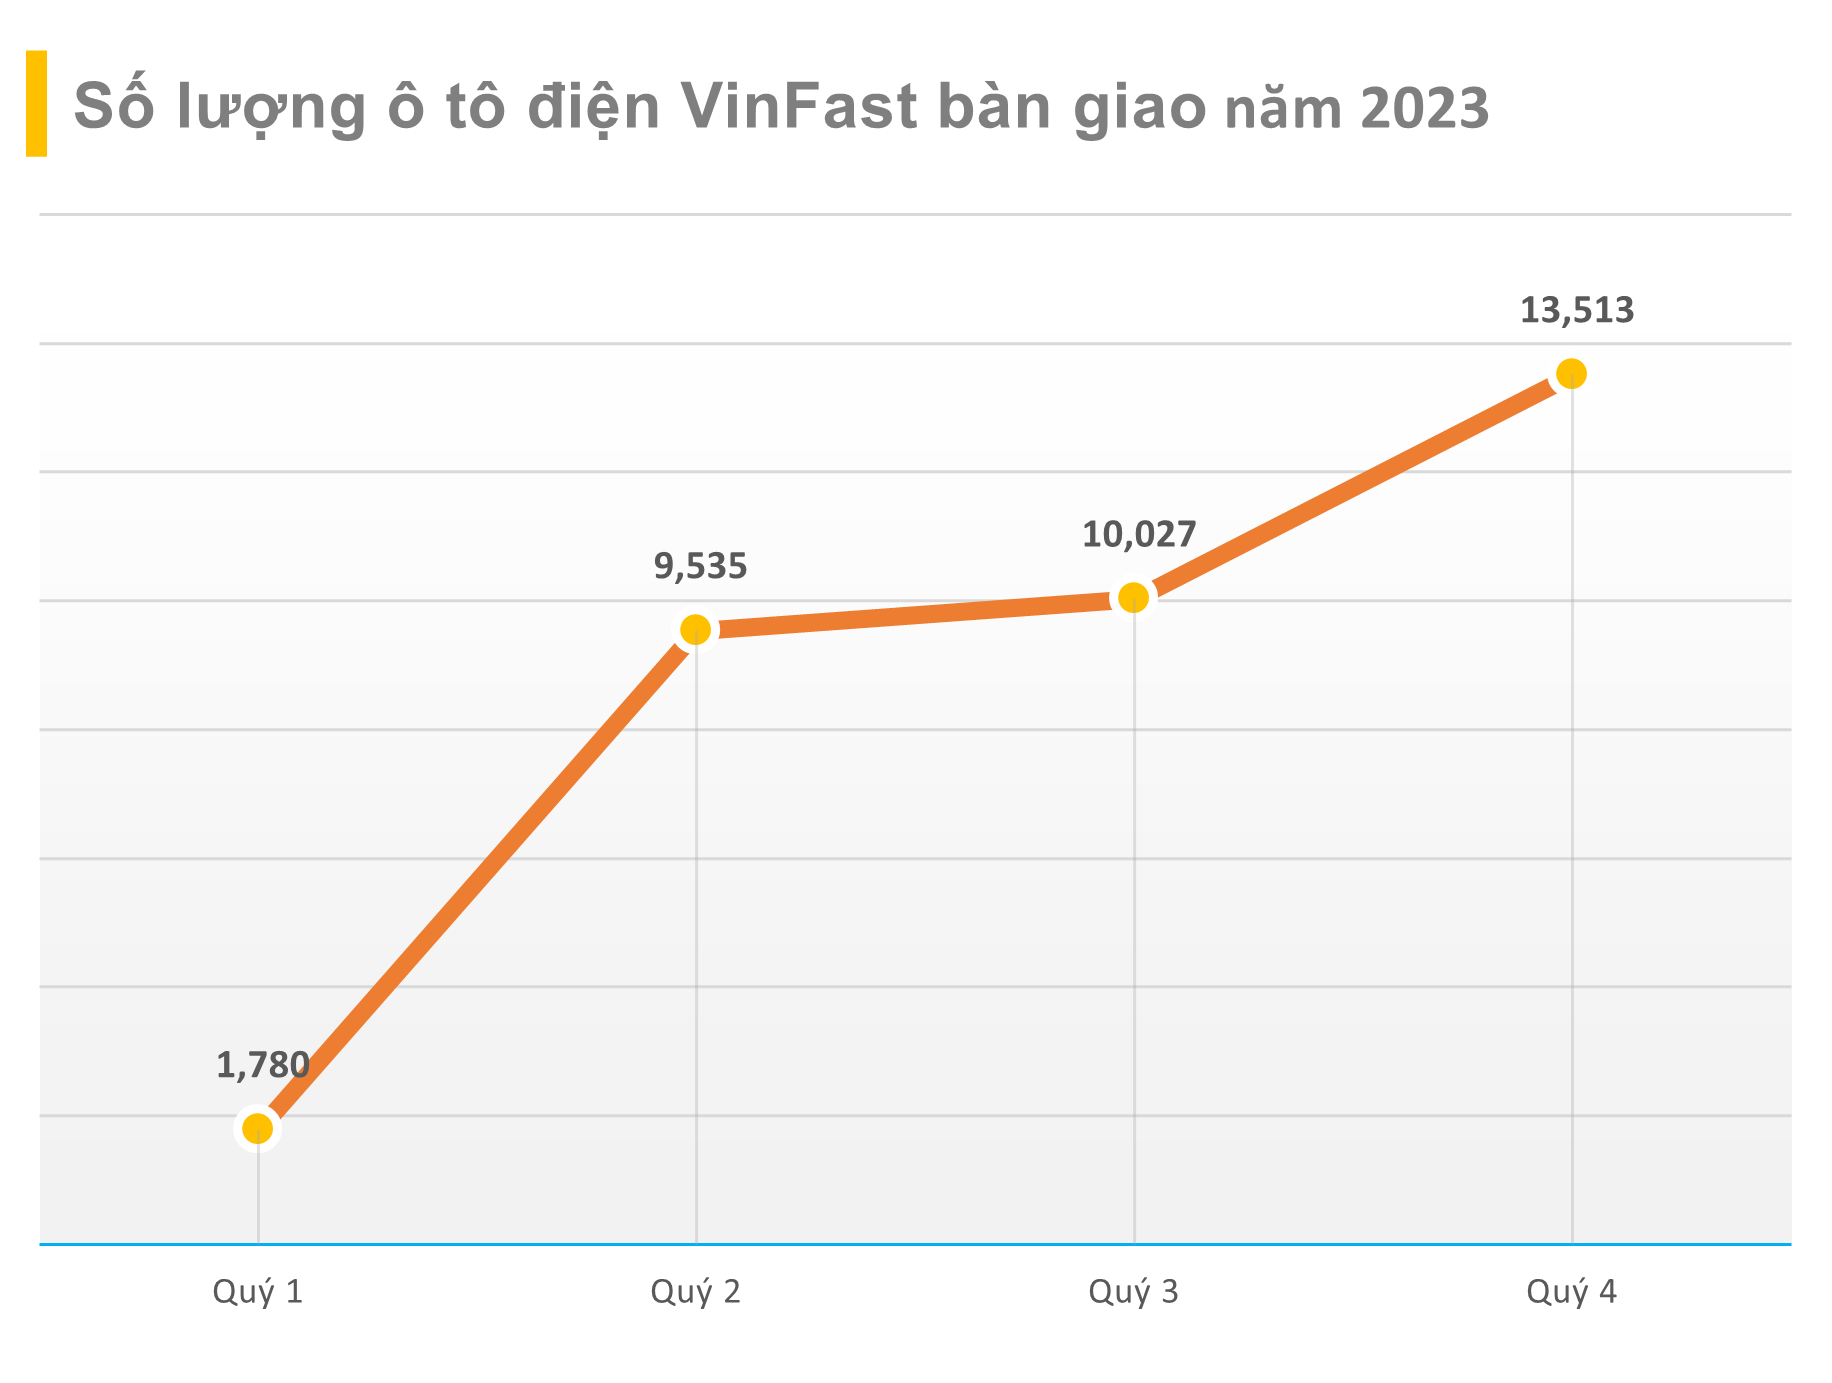 VinFast: Lượng bàn giao xe quý 4 tăng 35% so với quý 3, sẽ công bố kết quả kinh doanh vào đầu tuần tới - Ảnh 1.